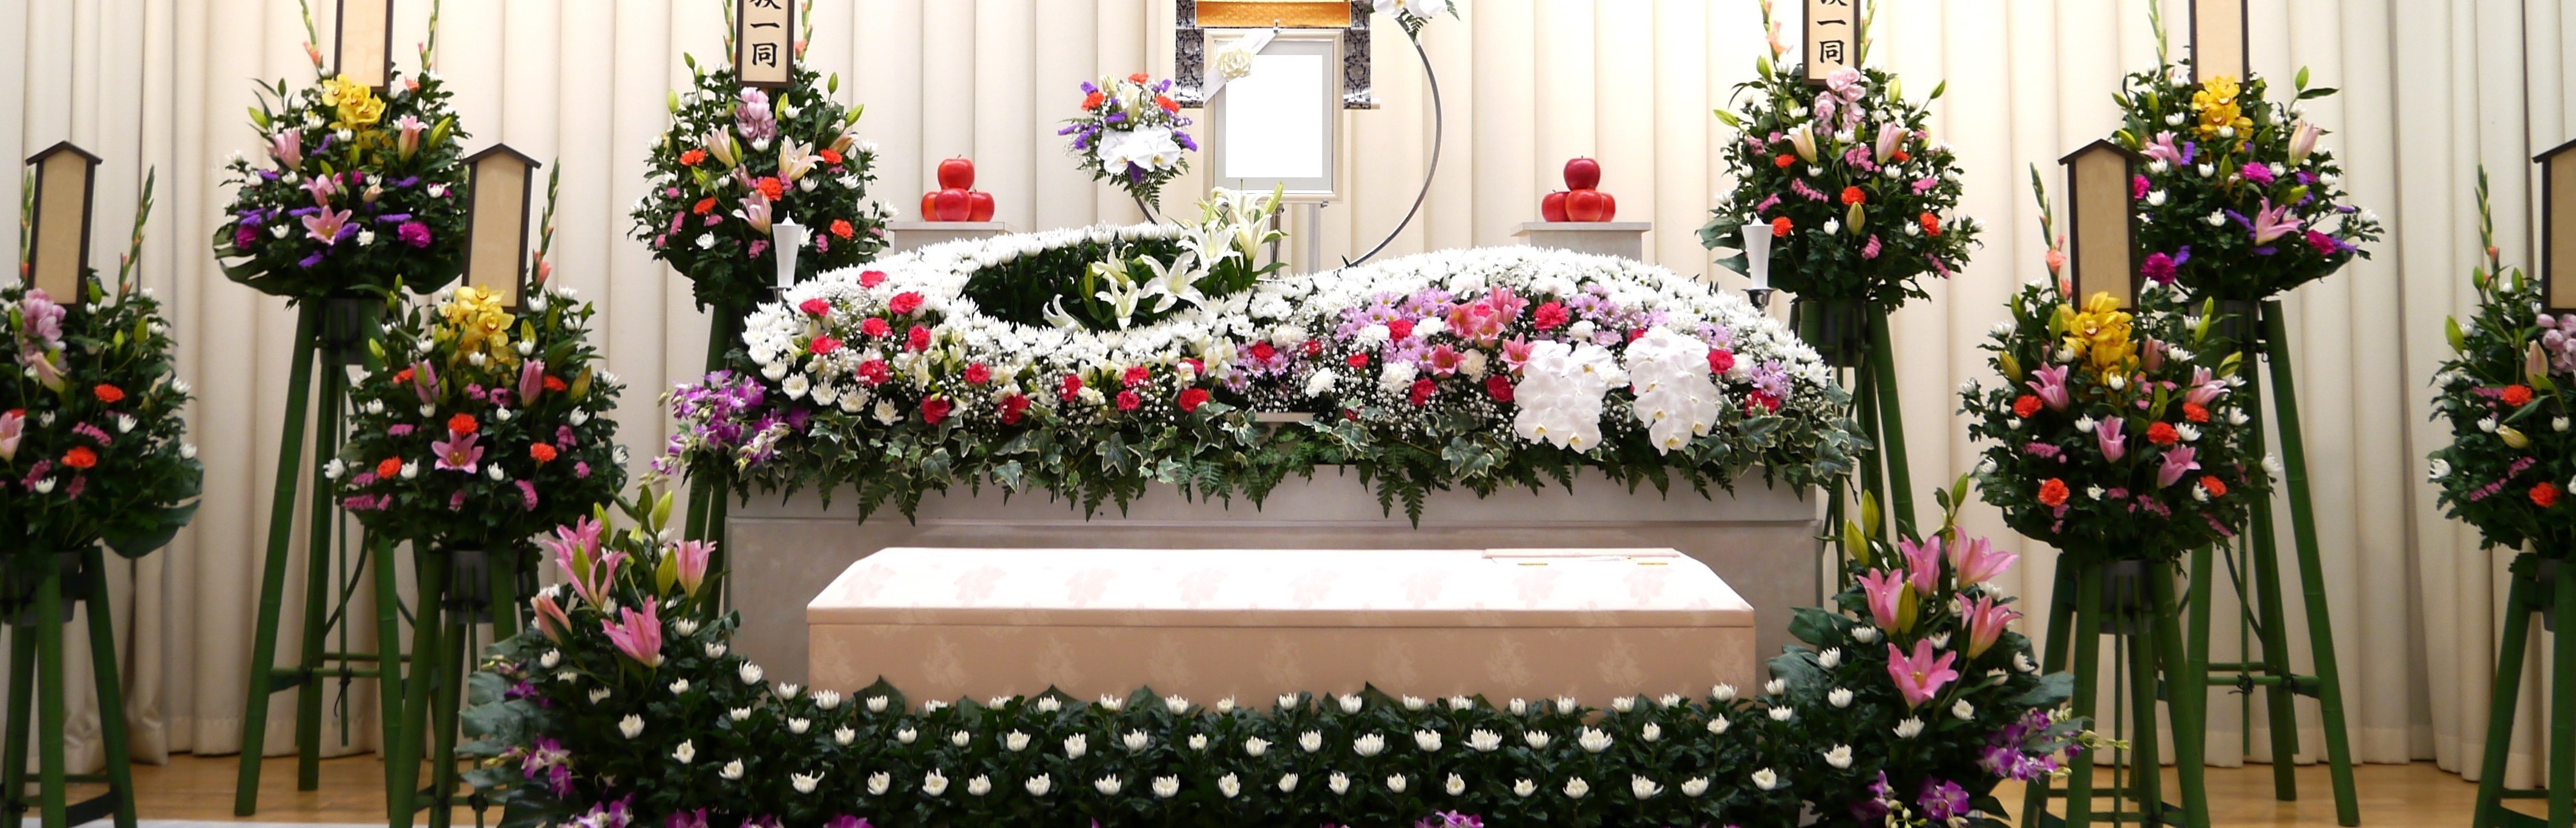 堺市立斎場での家族葬